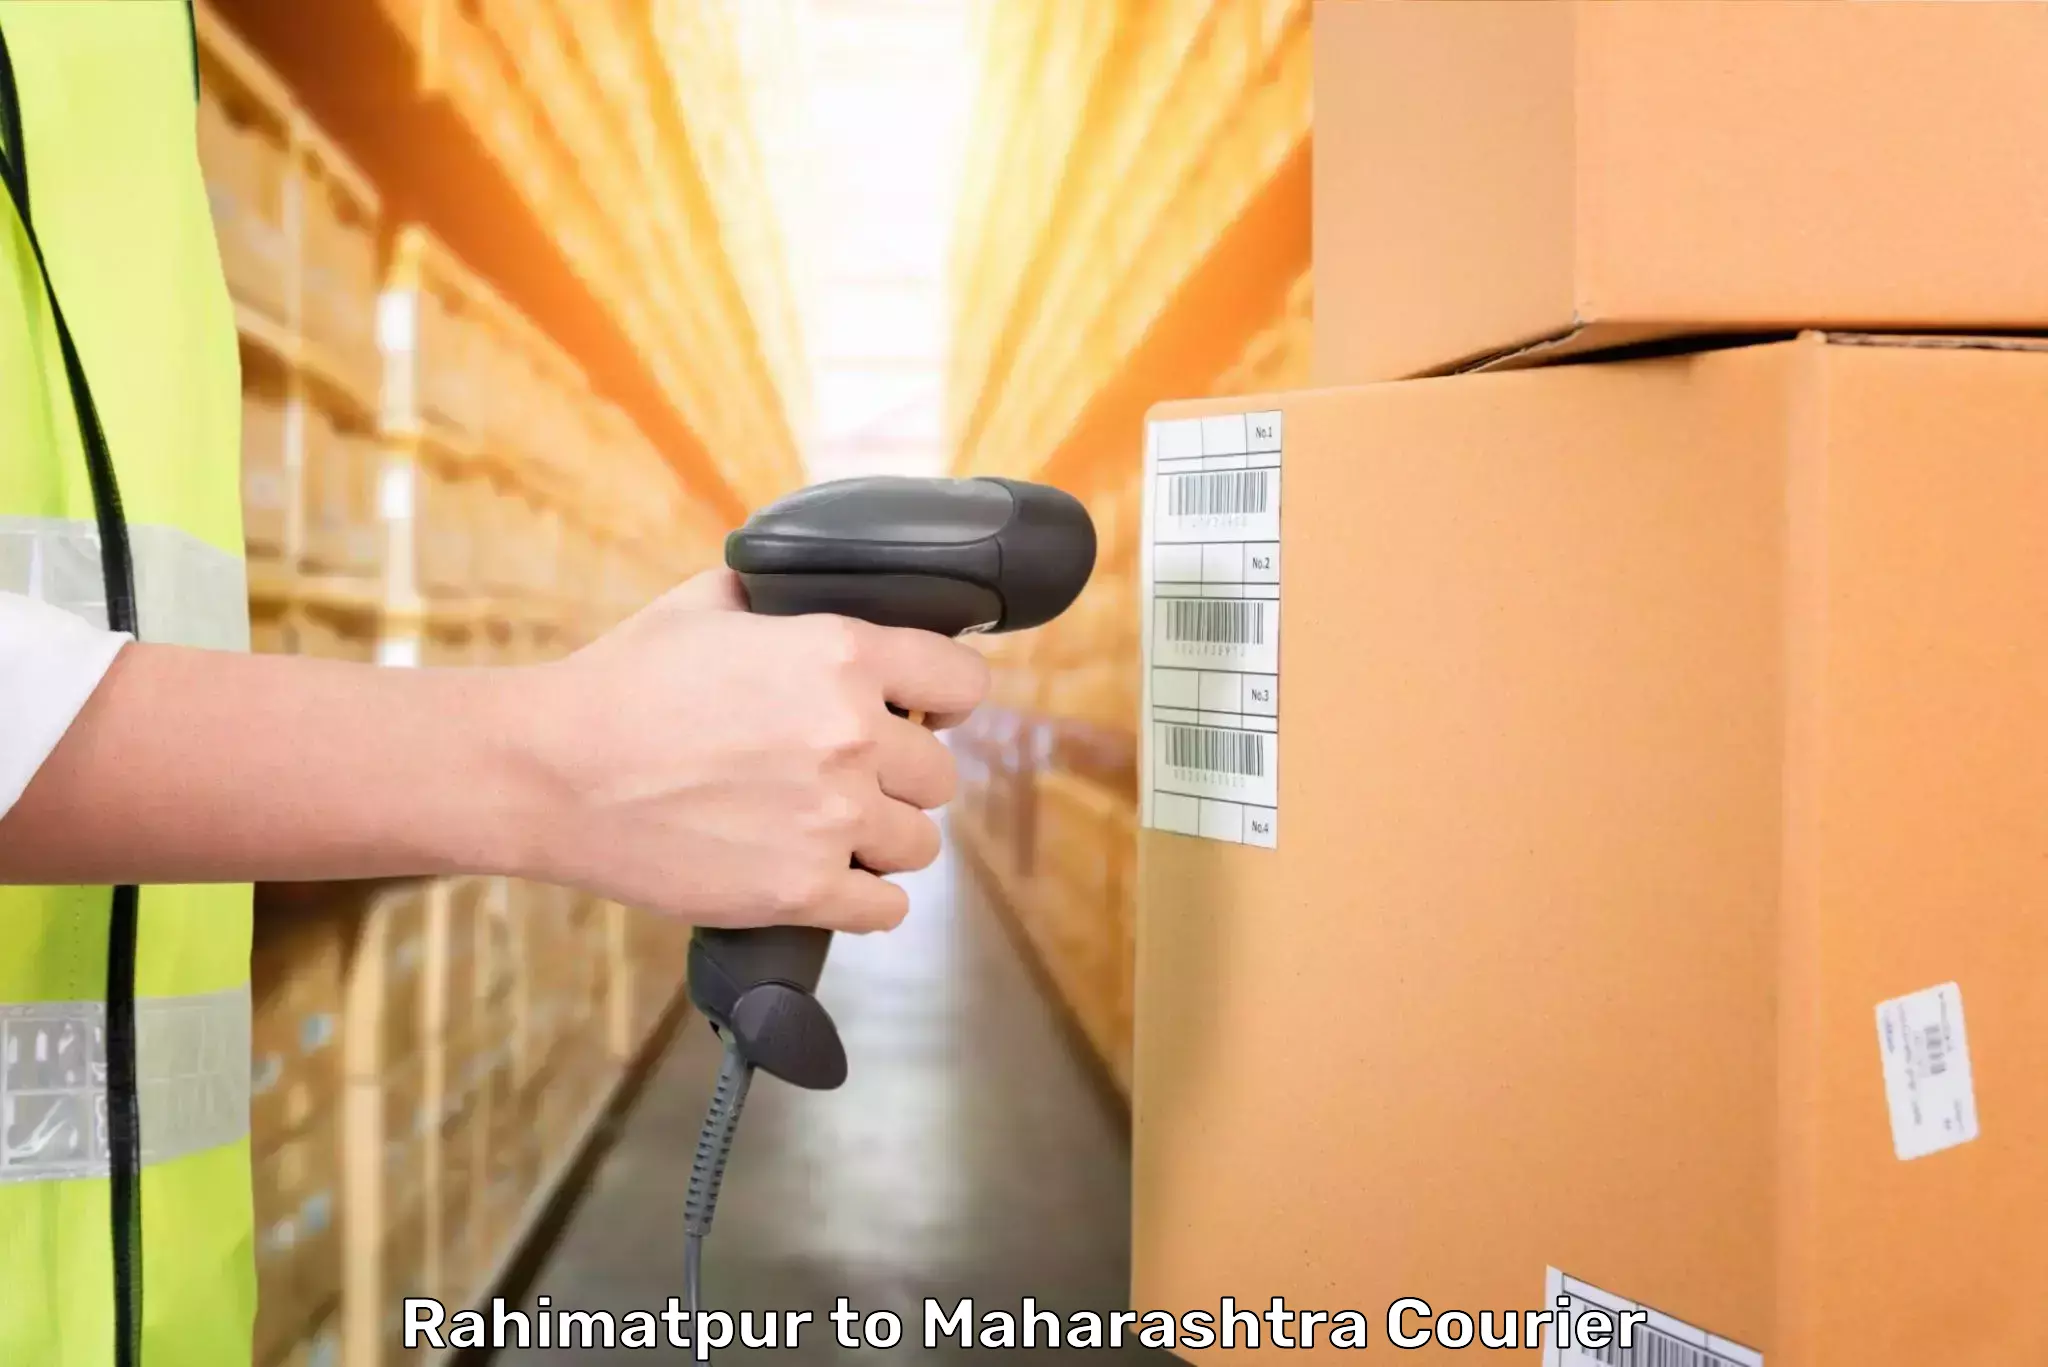 Luggage shipment specialists Rahimatpur to Maharashtra